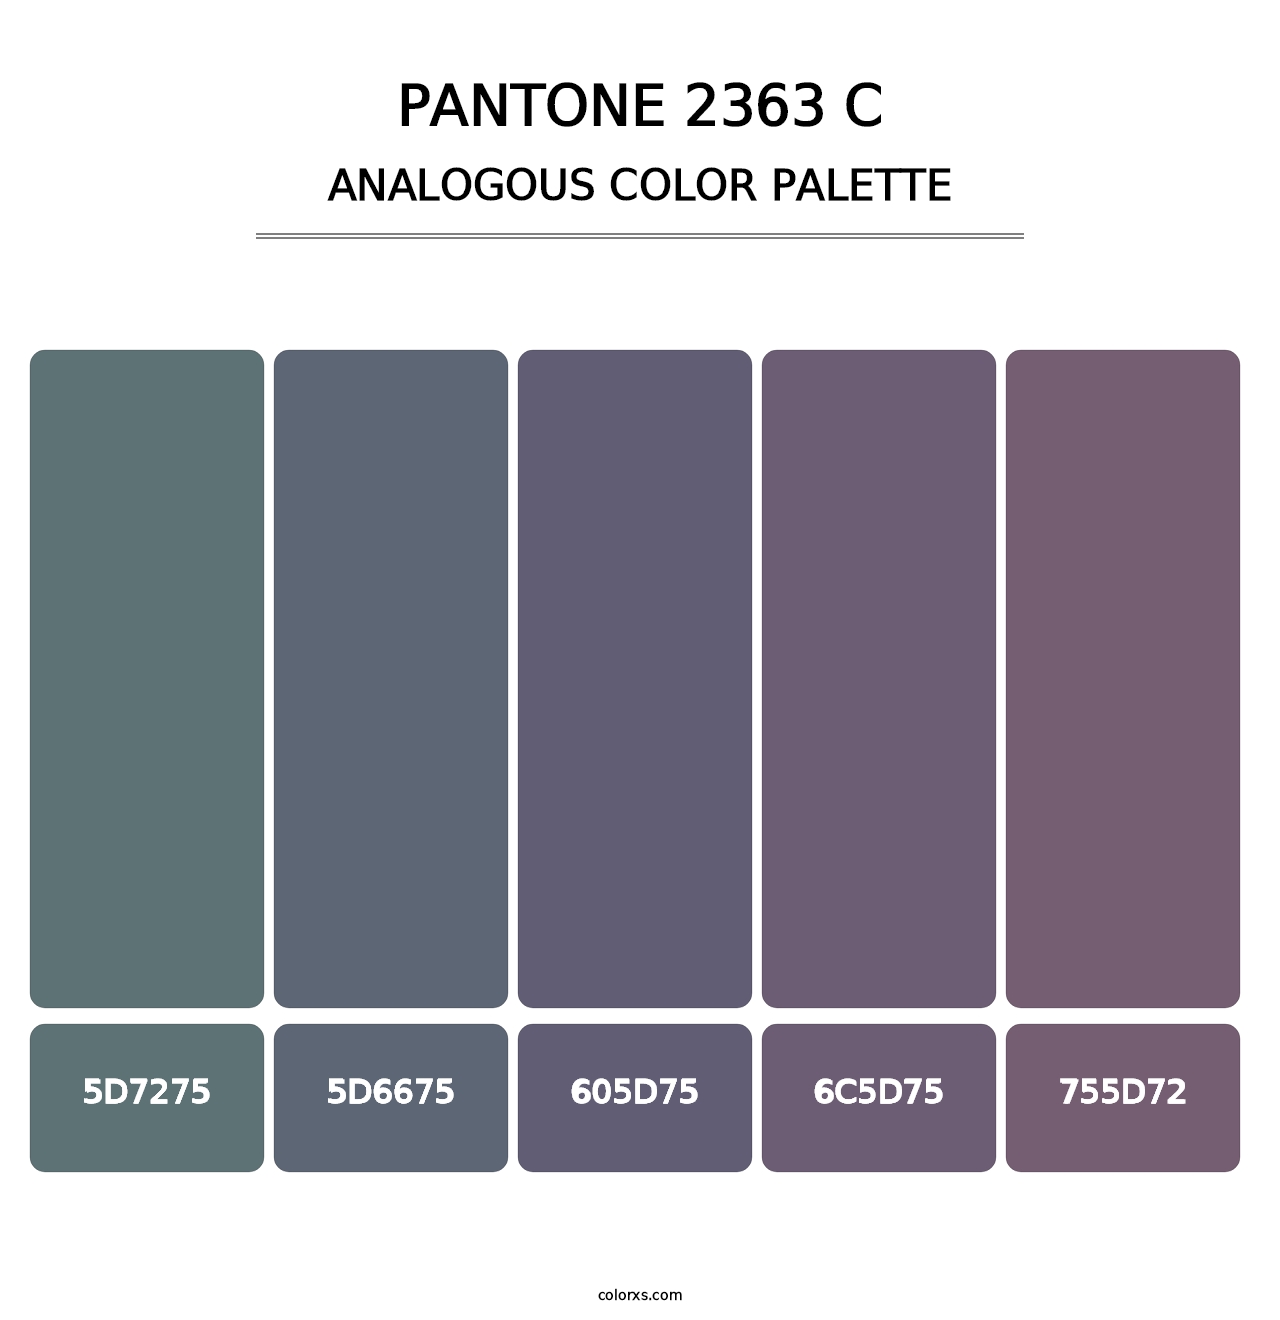 PANTONE 2363 C - Analogous Color Palette